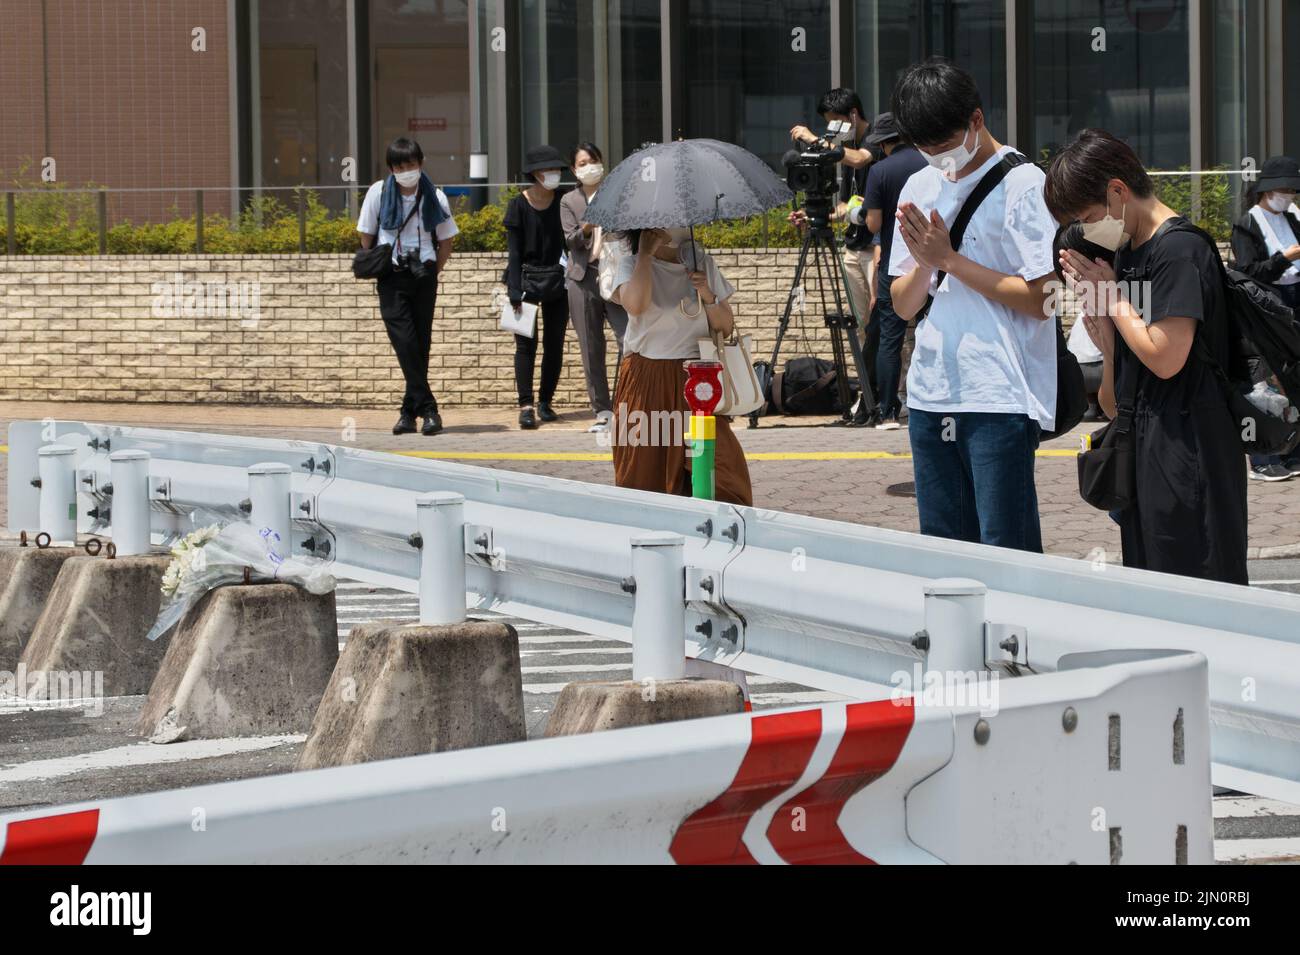 Nara, Giappone. 08th ago 2022. I popoli pregano posato nel luogo in cui il tardo primo ministro giapponese Shinzo Abe è stato girato vicino alla stazione di Yamato-Saidaiji nella prefettura di Nara, Giappone lunedì 8 agosto 2022. Foto di Keizo Mori/UPI Credit: UPI/Alamy Live News Foto Stock